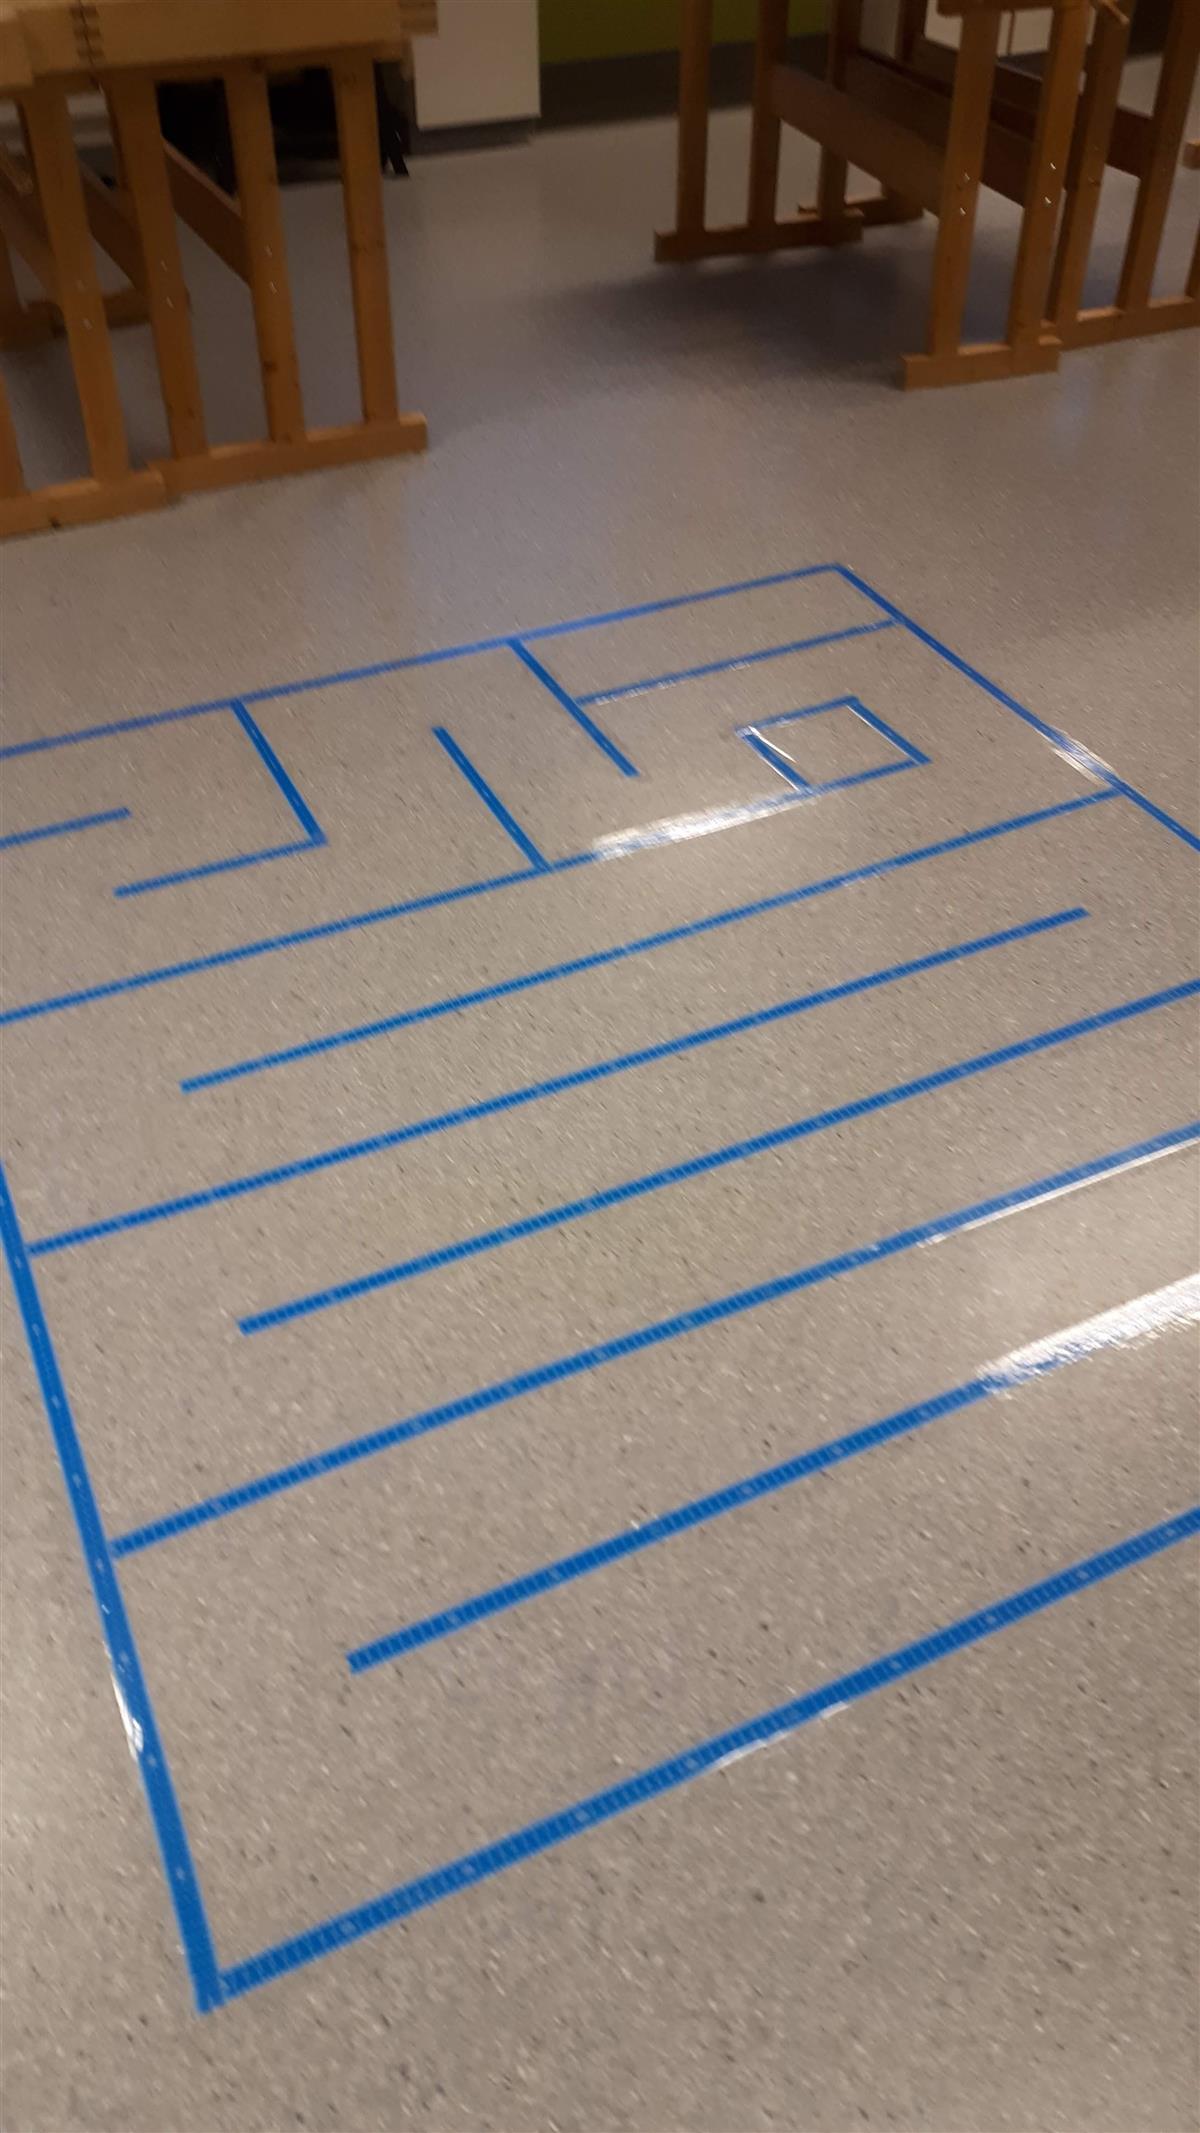 Labyrint på golvet - Klikk for stort bilete